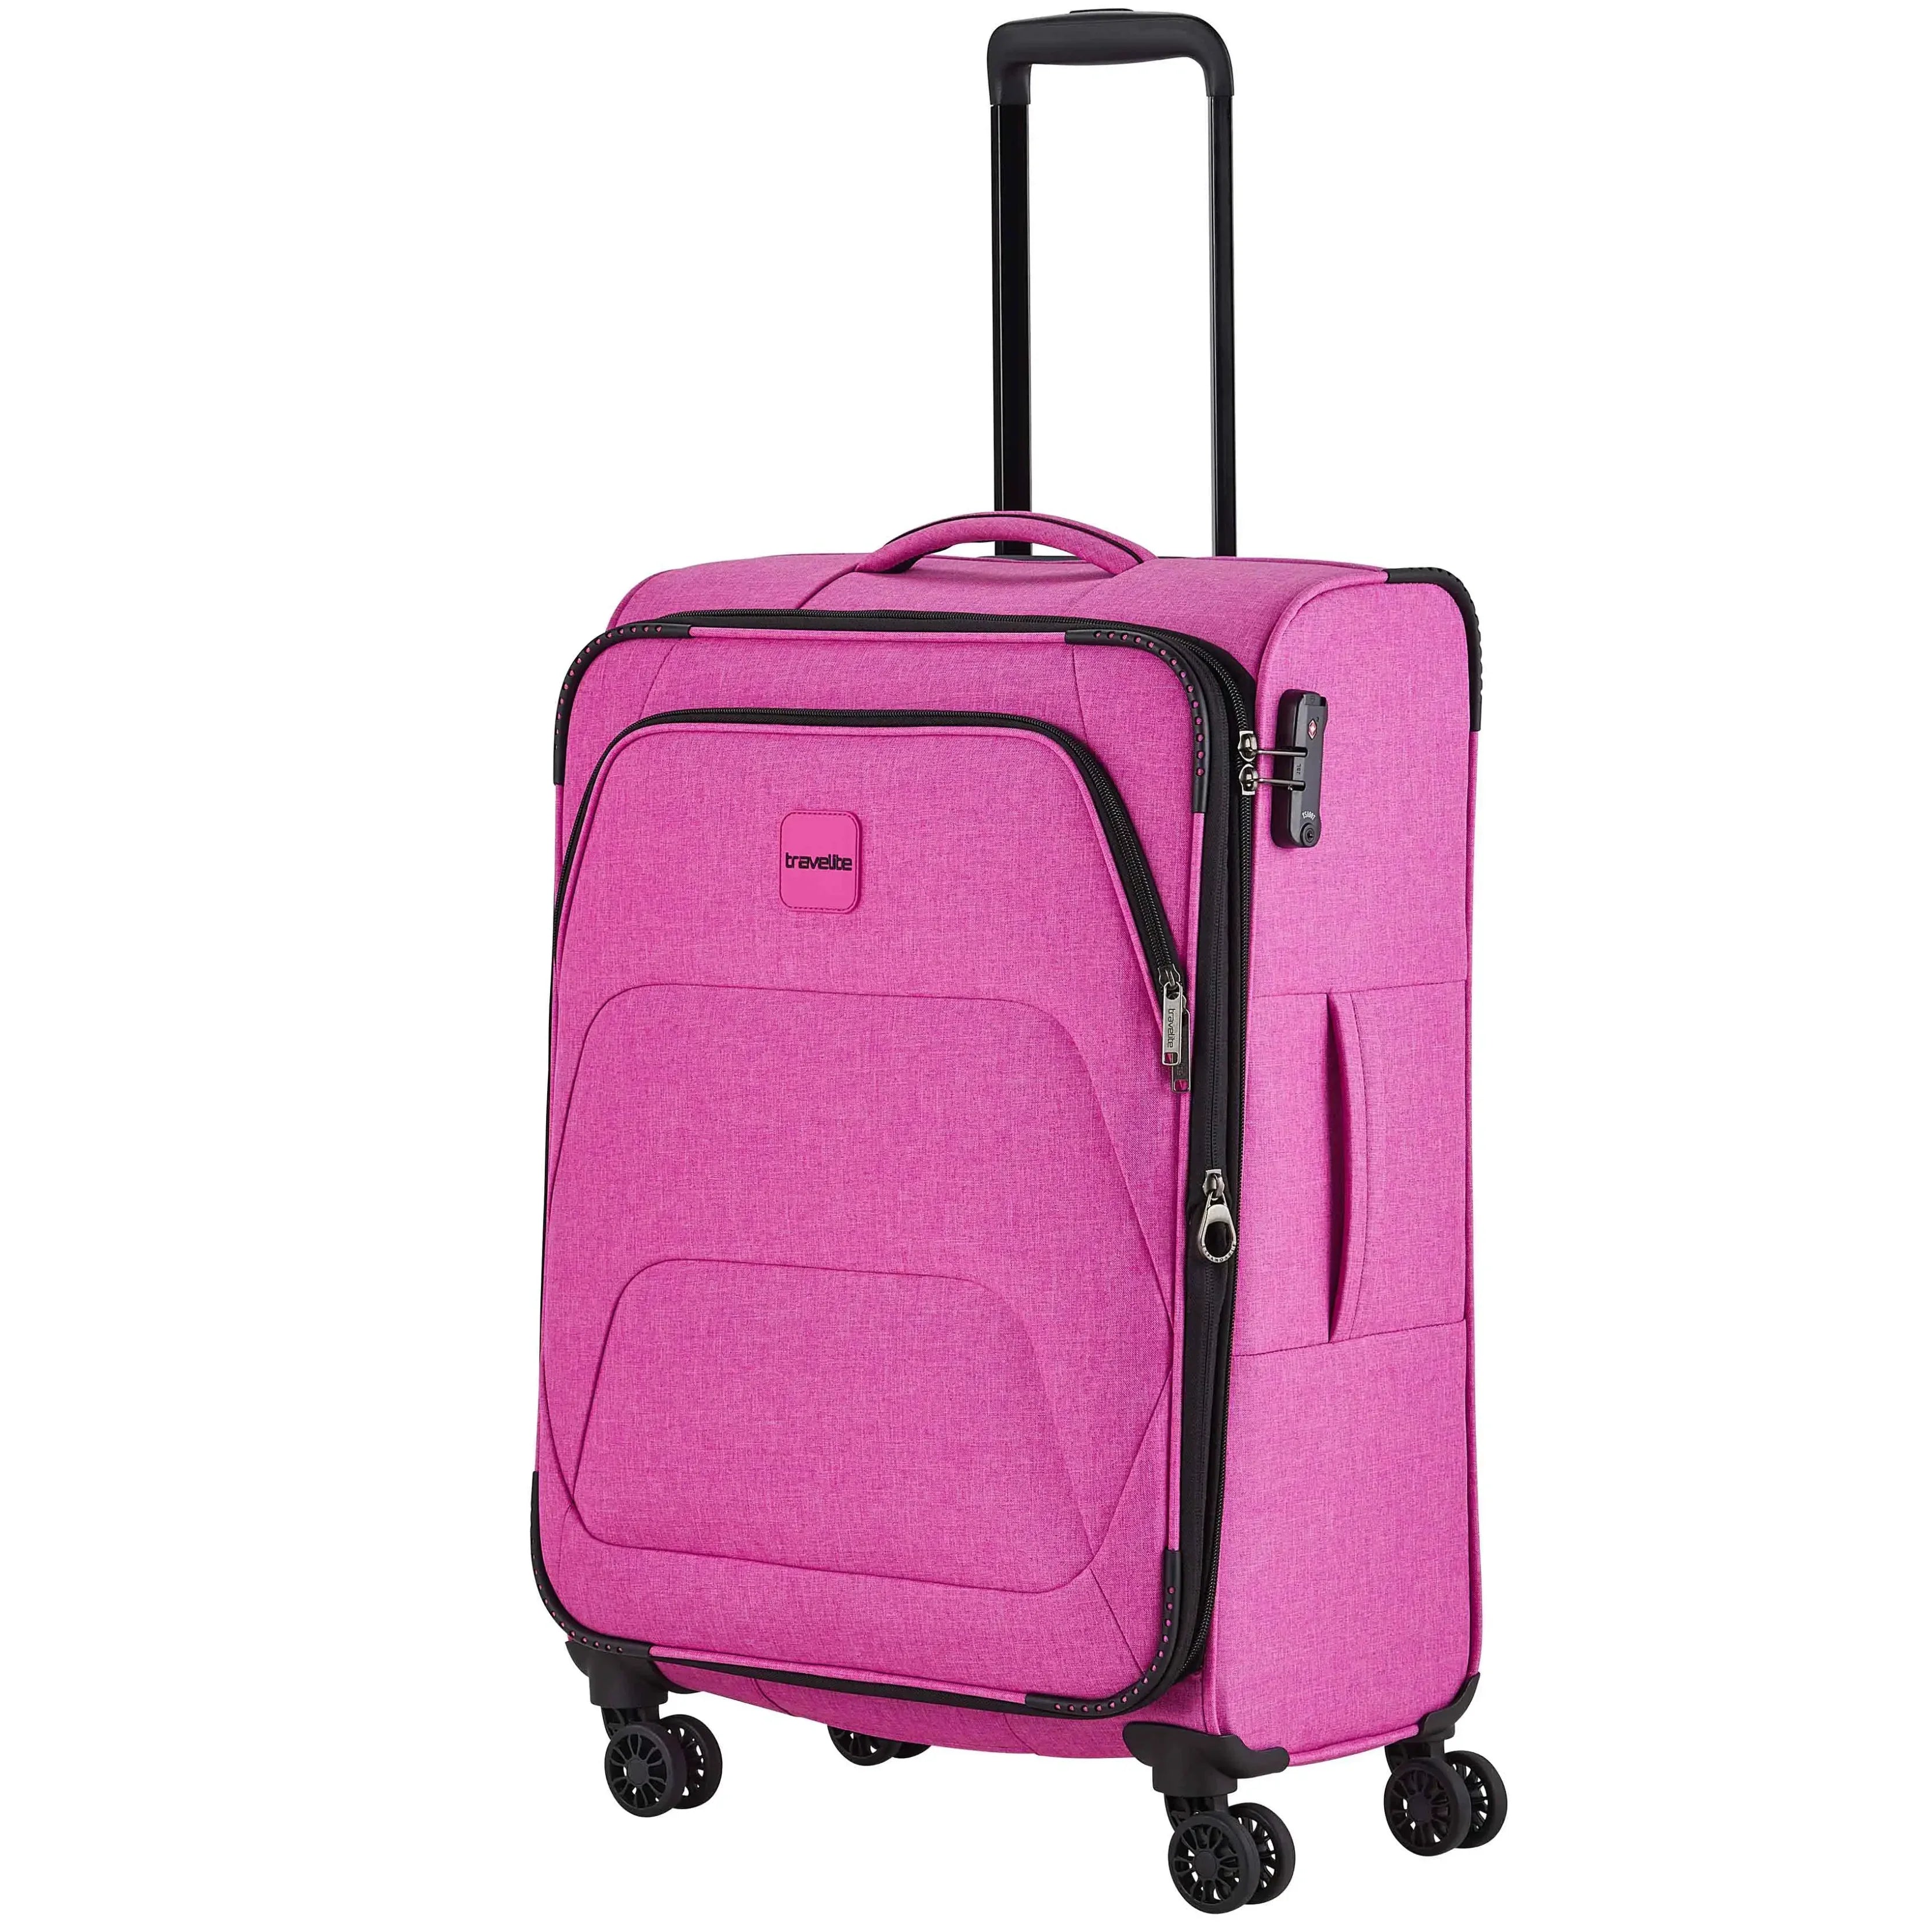 Travelite Adria 4-Rollen Trolley 67 cm - pink